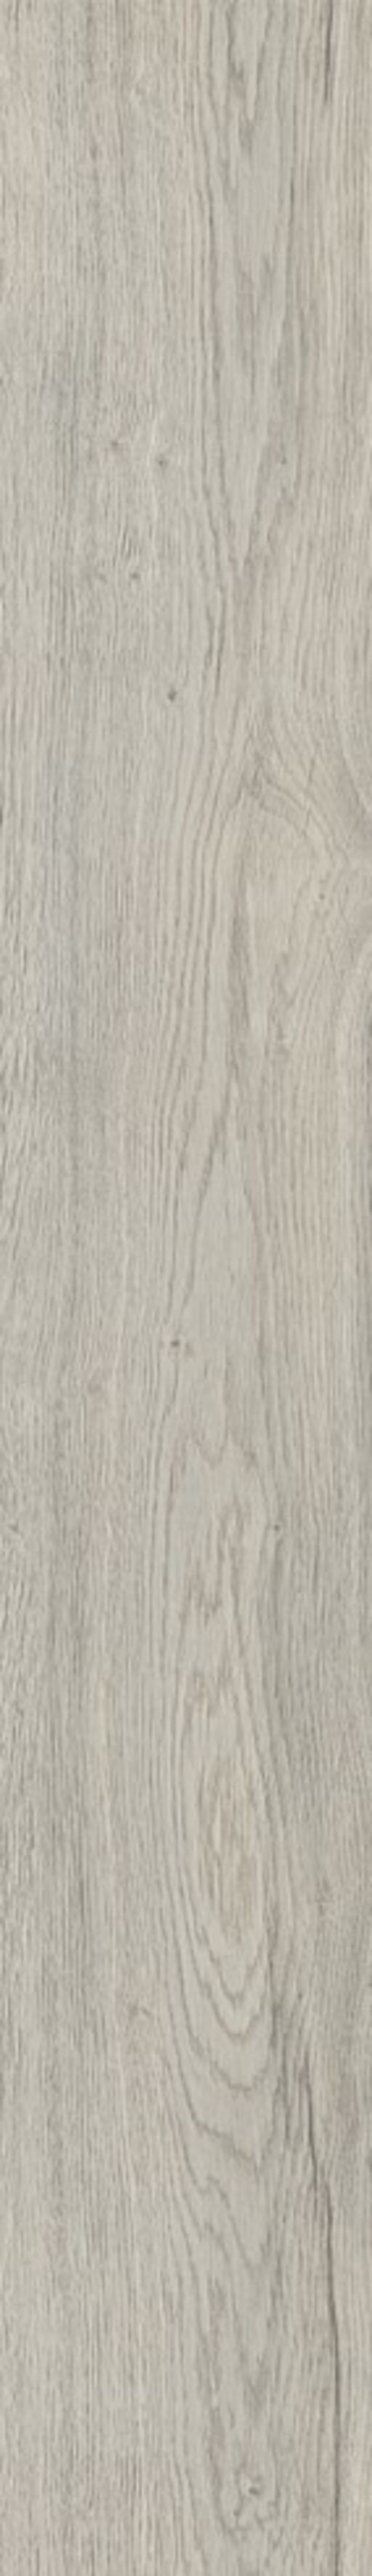 Woodland, Gisburn Oak Laminate Flooring, 8mm Image 2